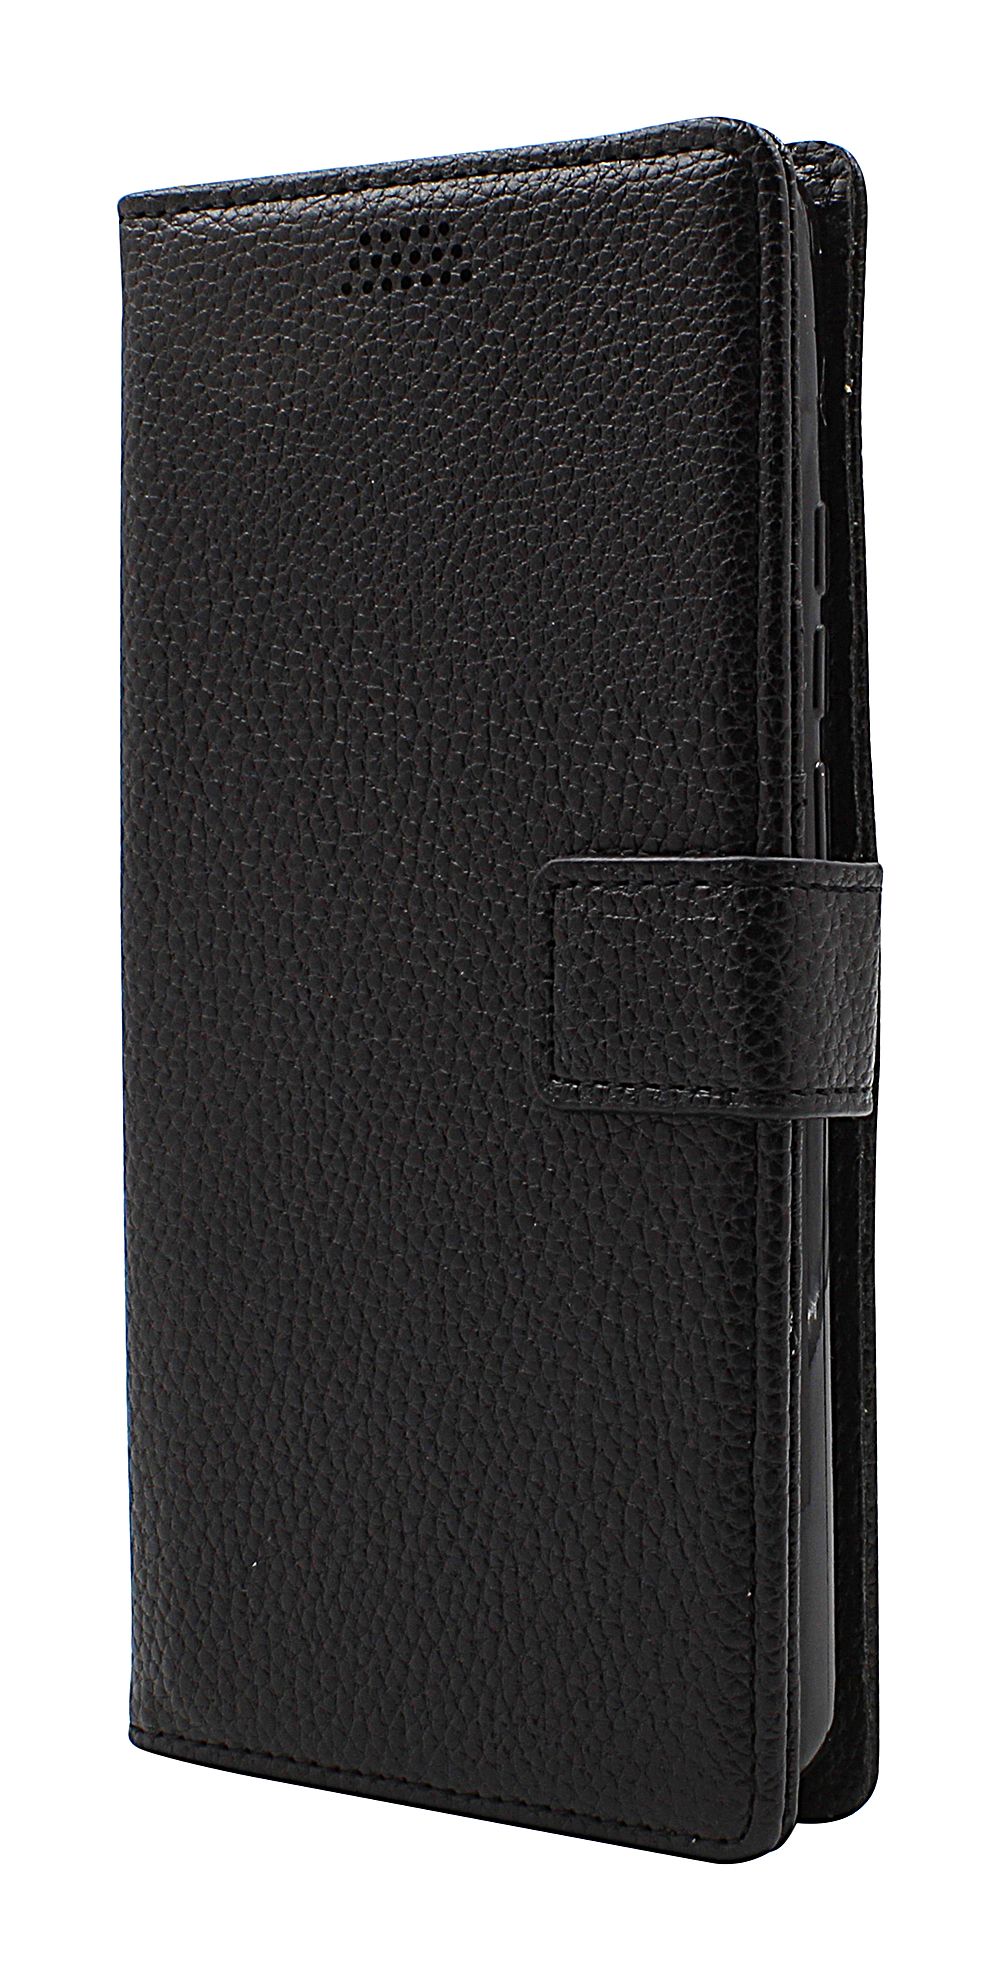 billigamobilskydd.seNew Standcase Wallet Motorola One Hyper